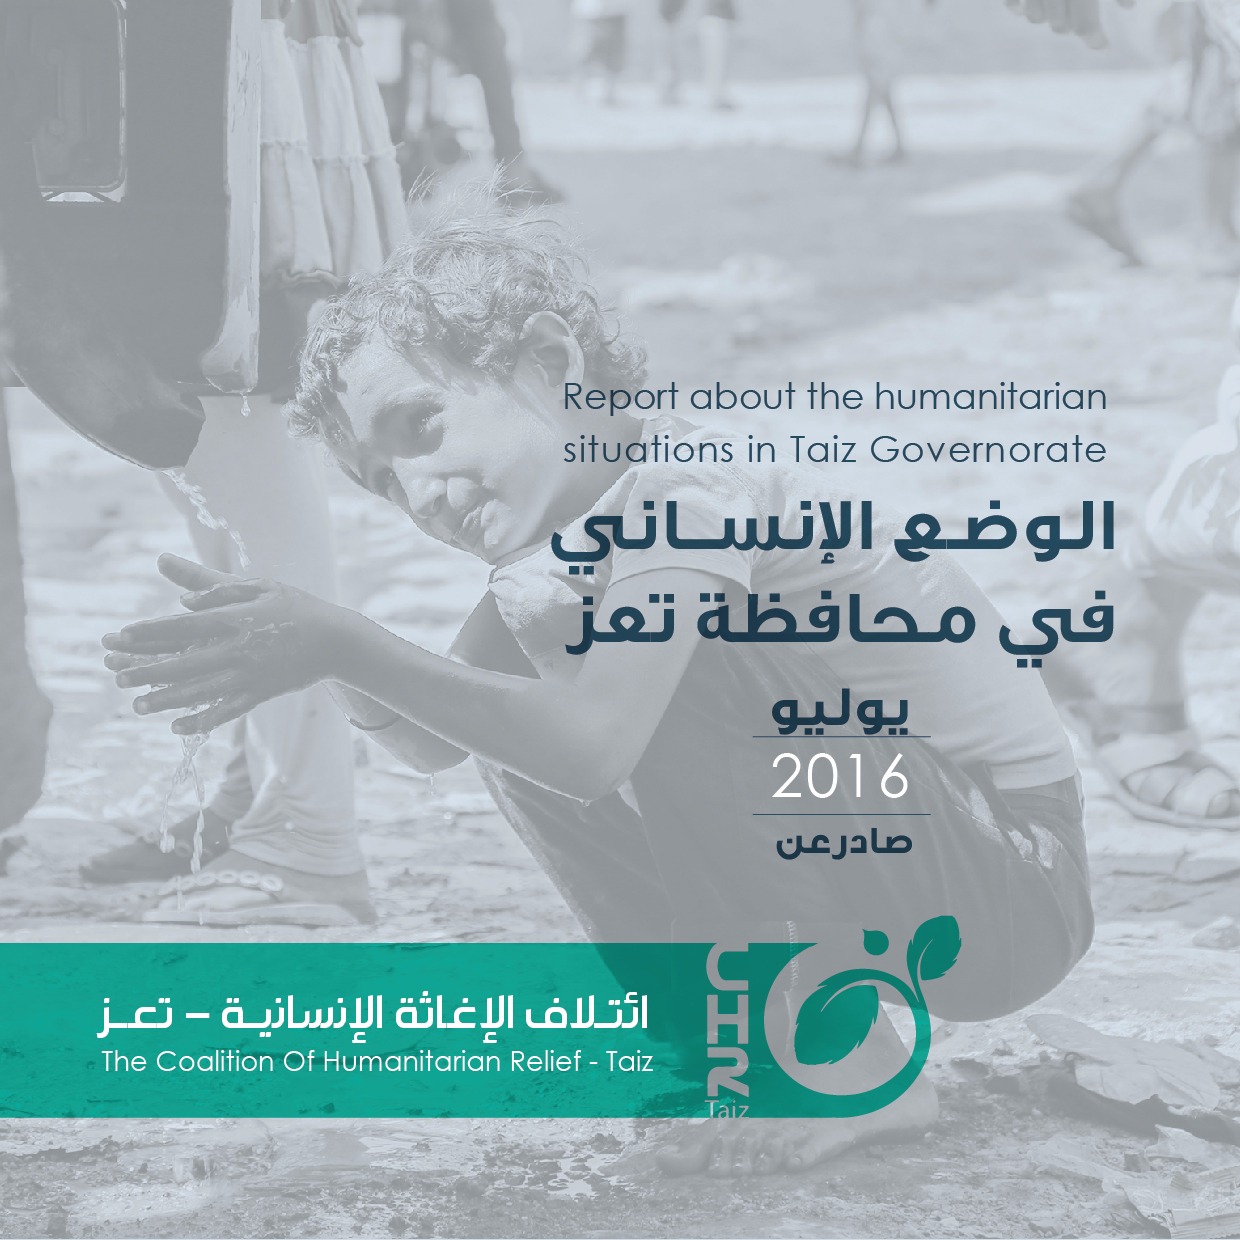 ائتلاف الإغاثة بتعز يصدر تقريراً جديداً عن الأوضاع الإنسانية في تعز خلال يوليو 2016